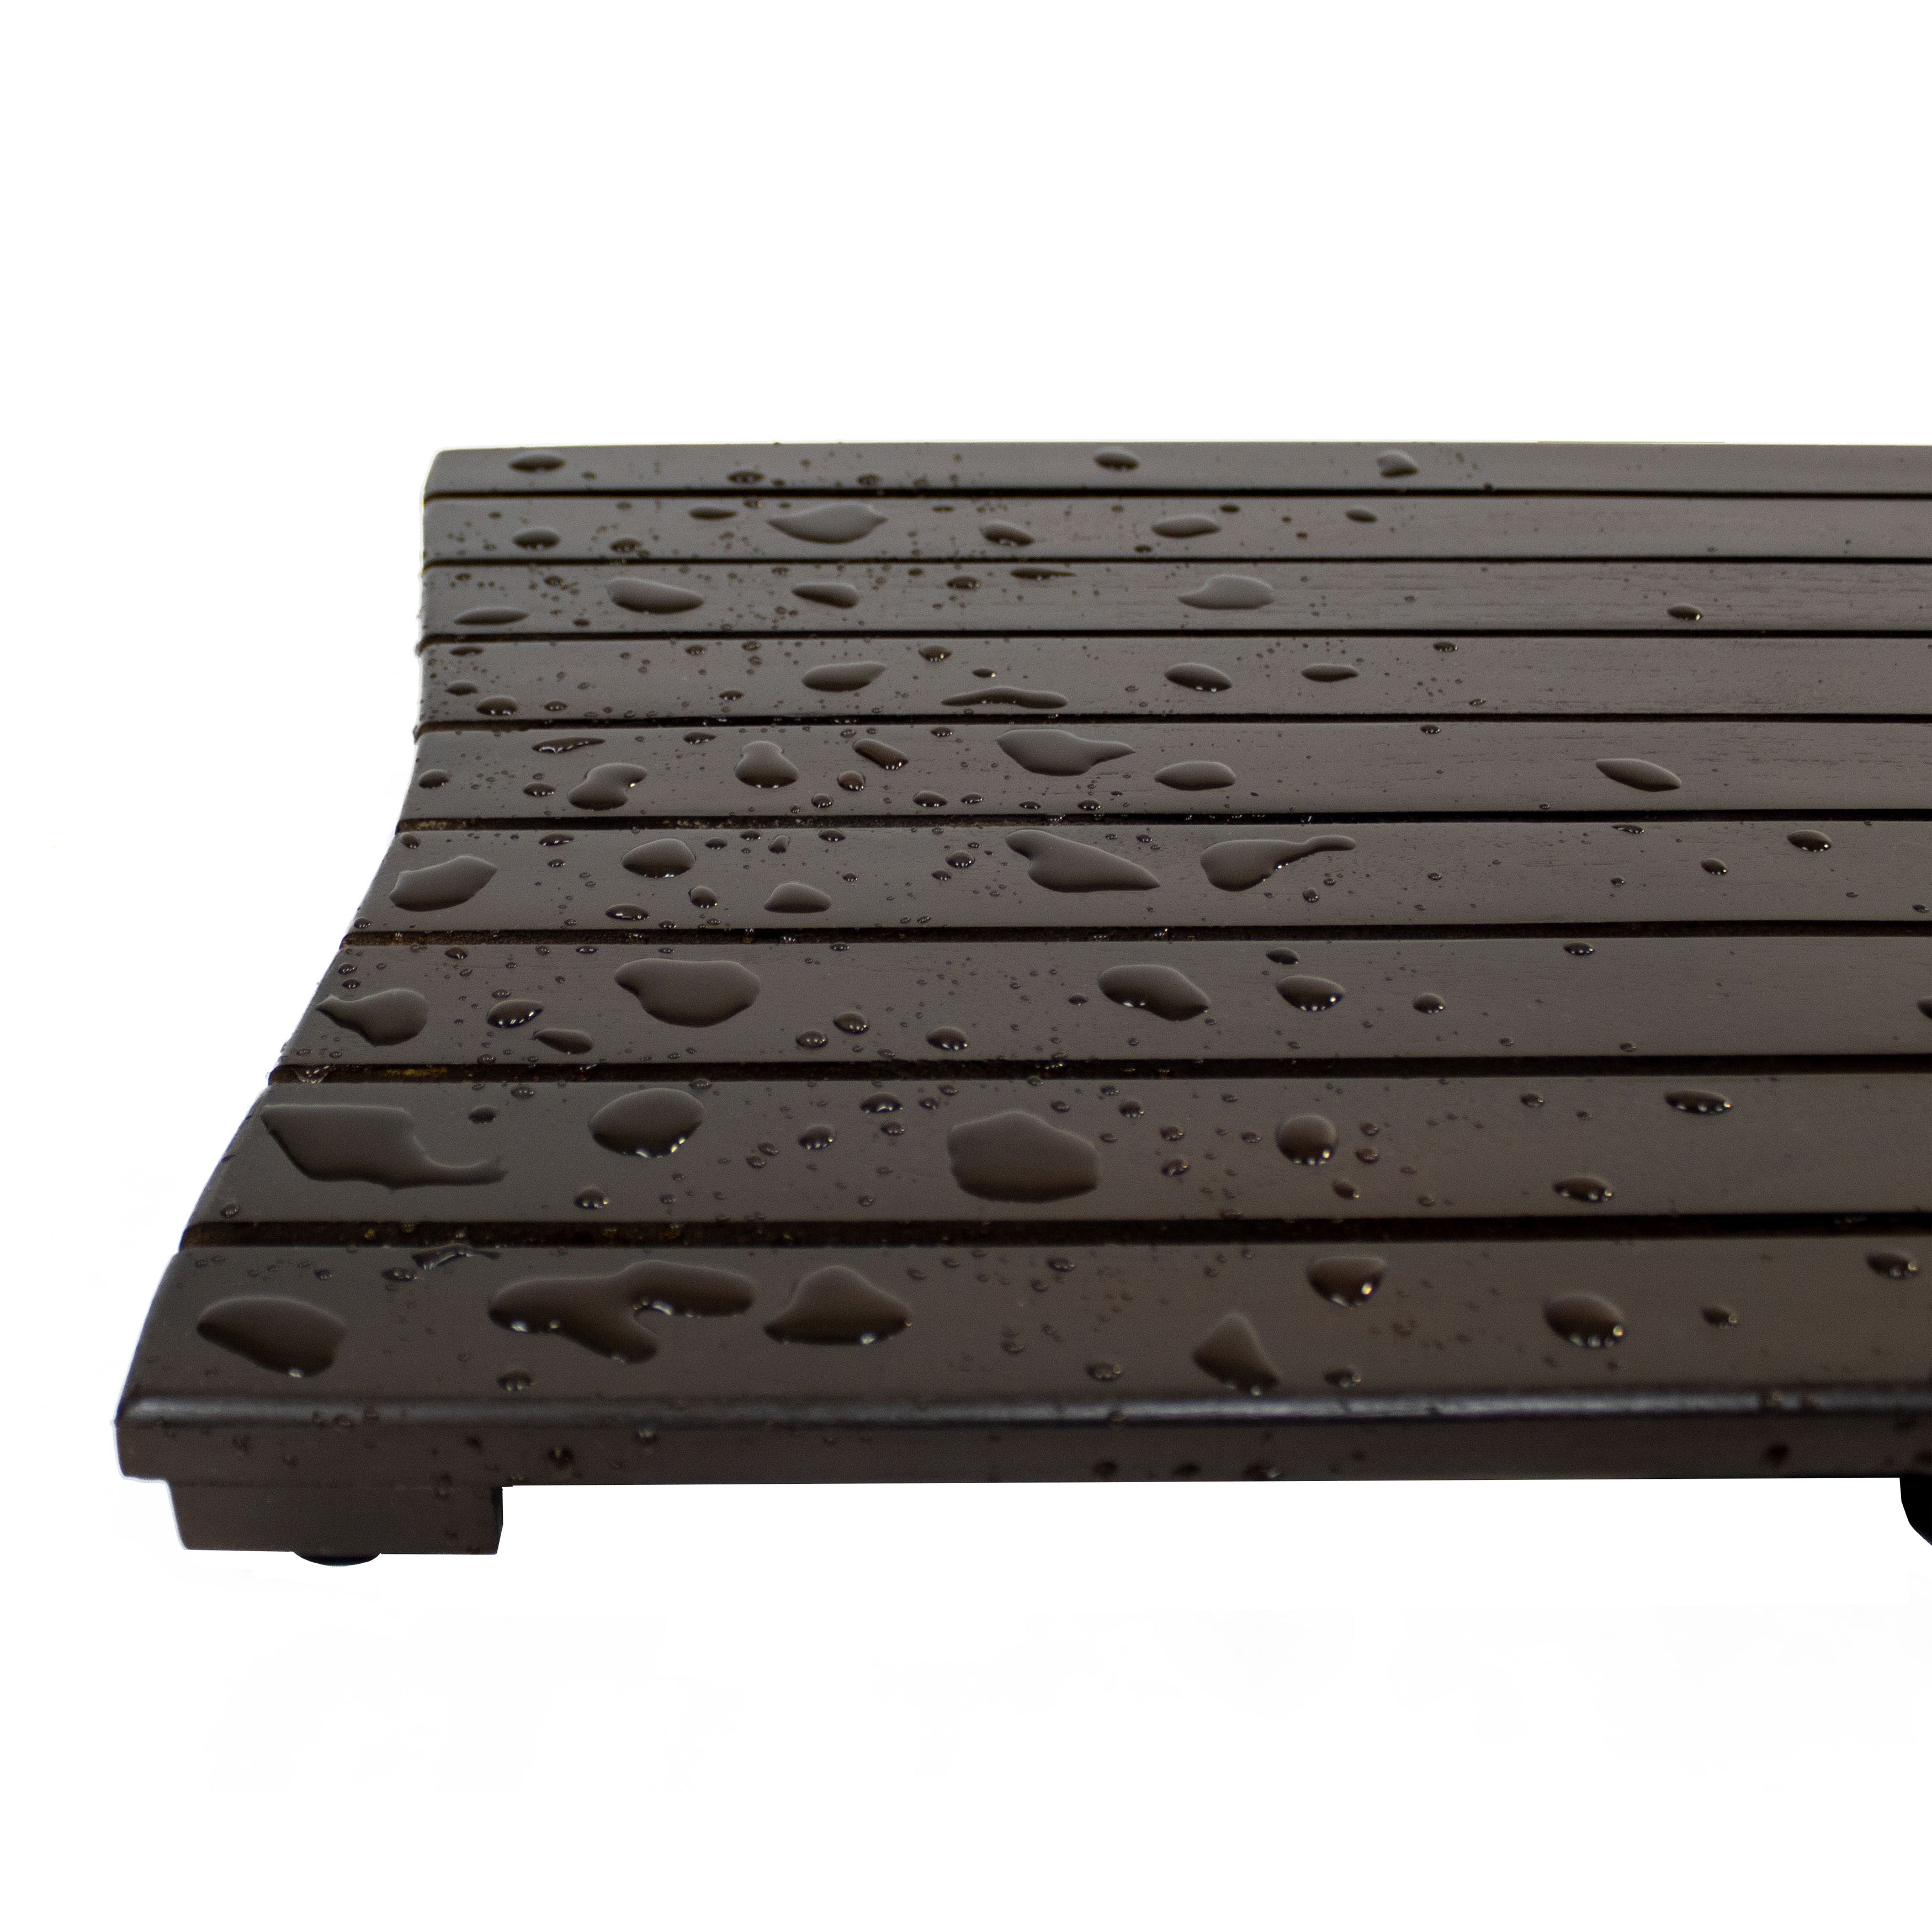 DecoTeak® Eleganto® 40”W Teak Floor Mat in Woodland Brown Finish